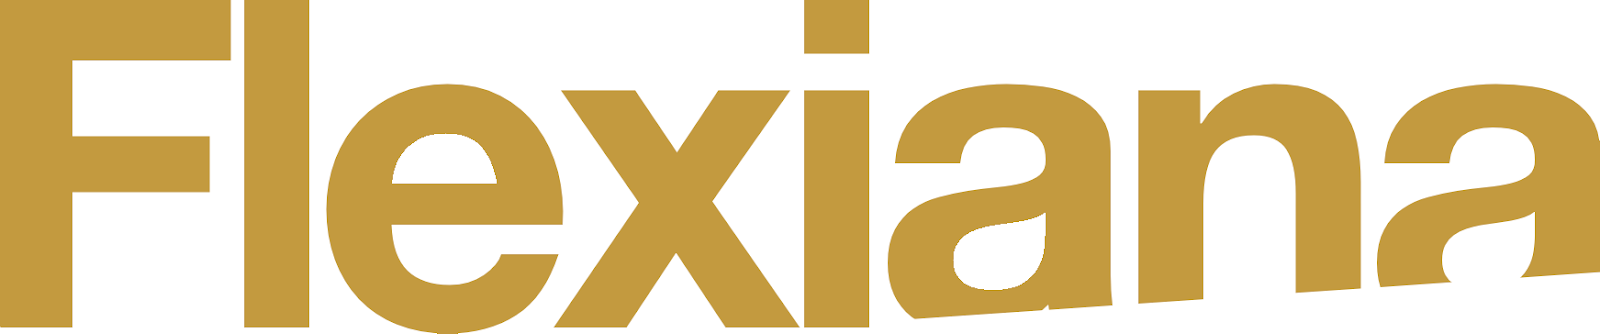 Logo for Flexiana.